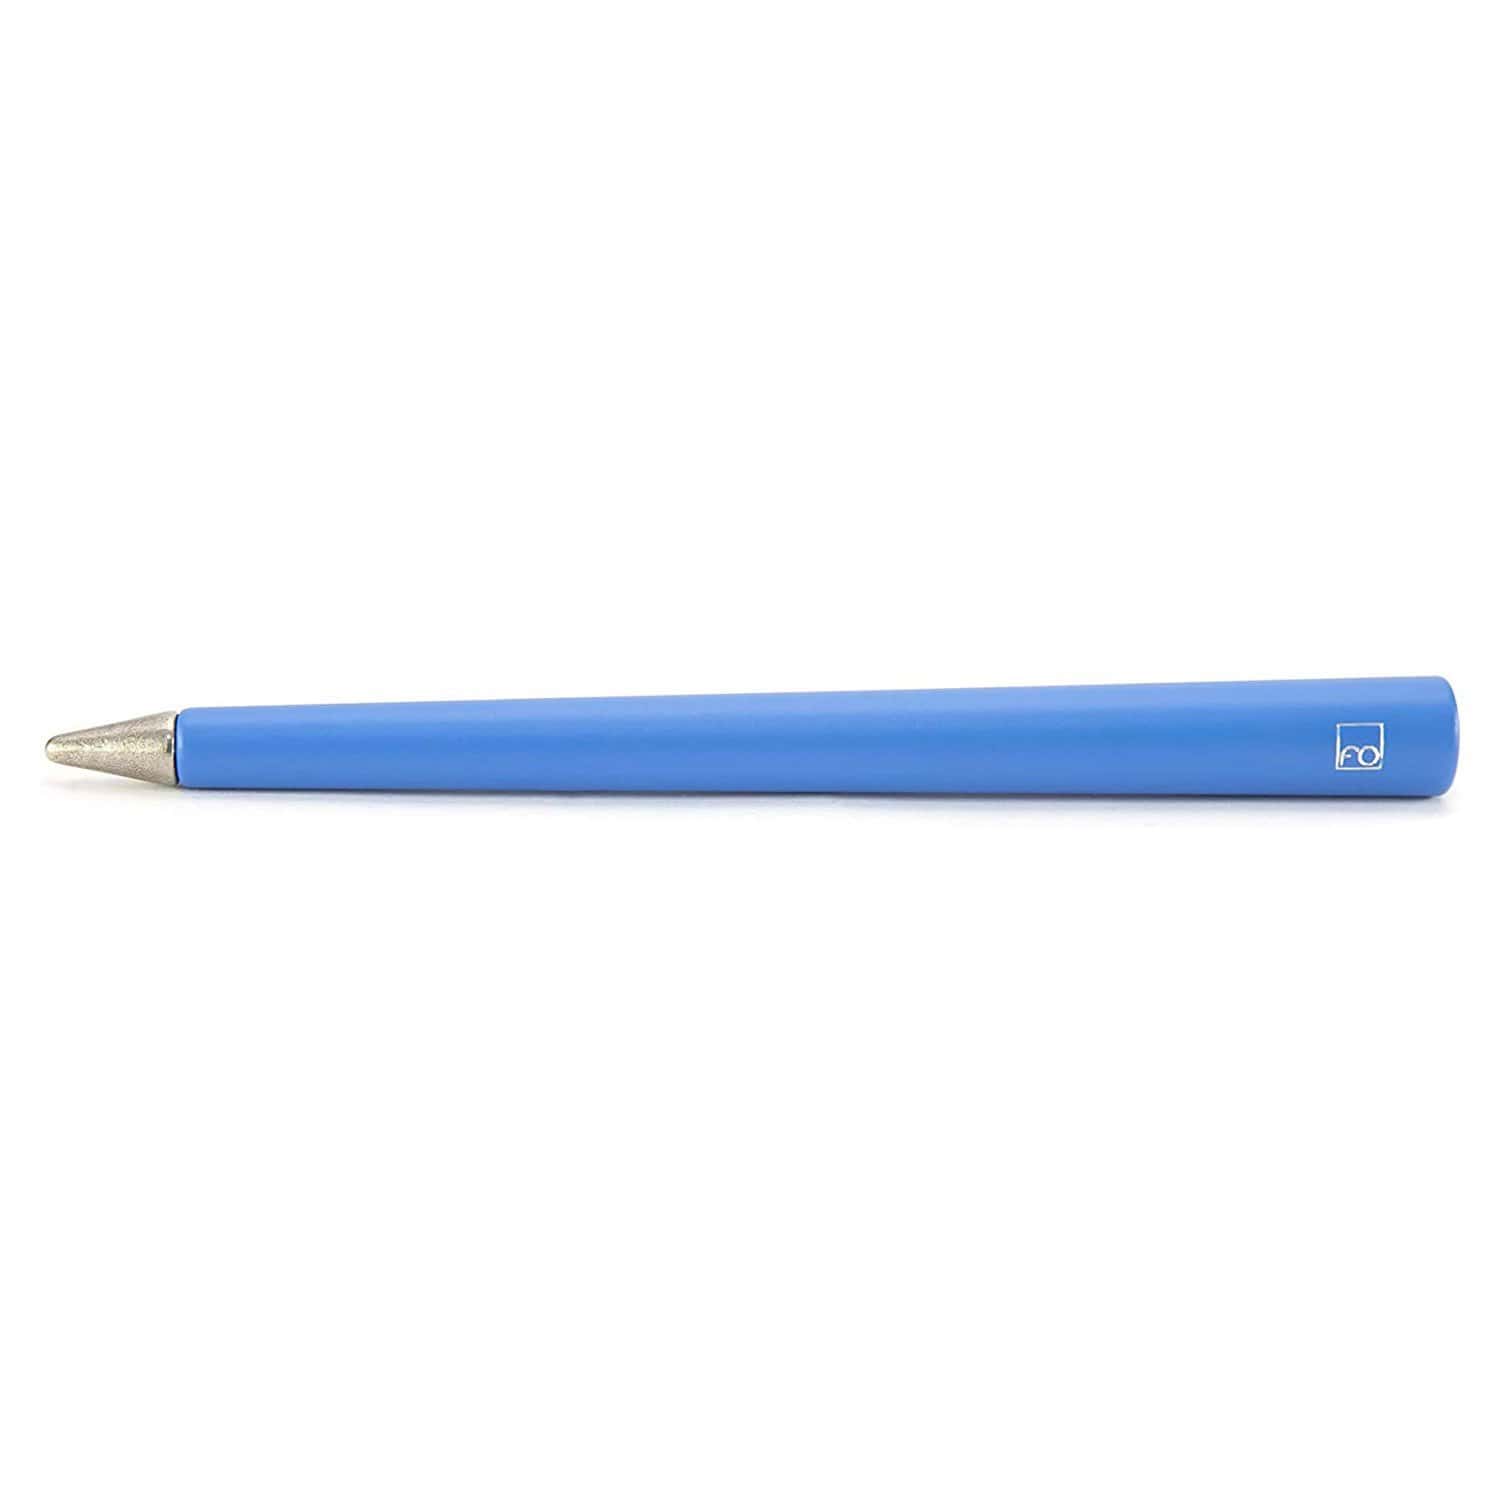 قلم بينينفارينا فوريفر بريمينا الأزرق بدون حبر - NPKRE01552 - Jashanmal Home